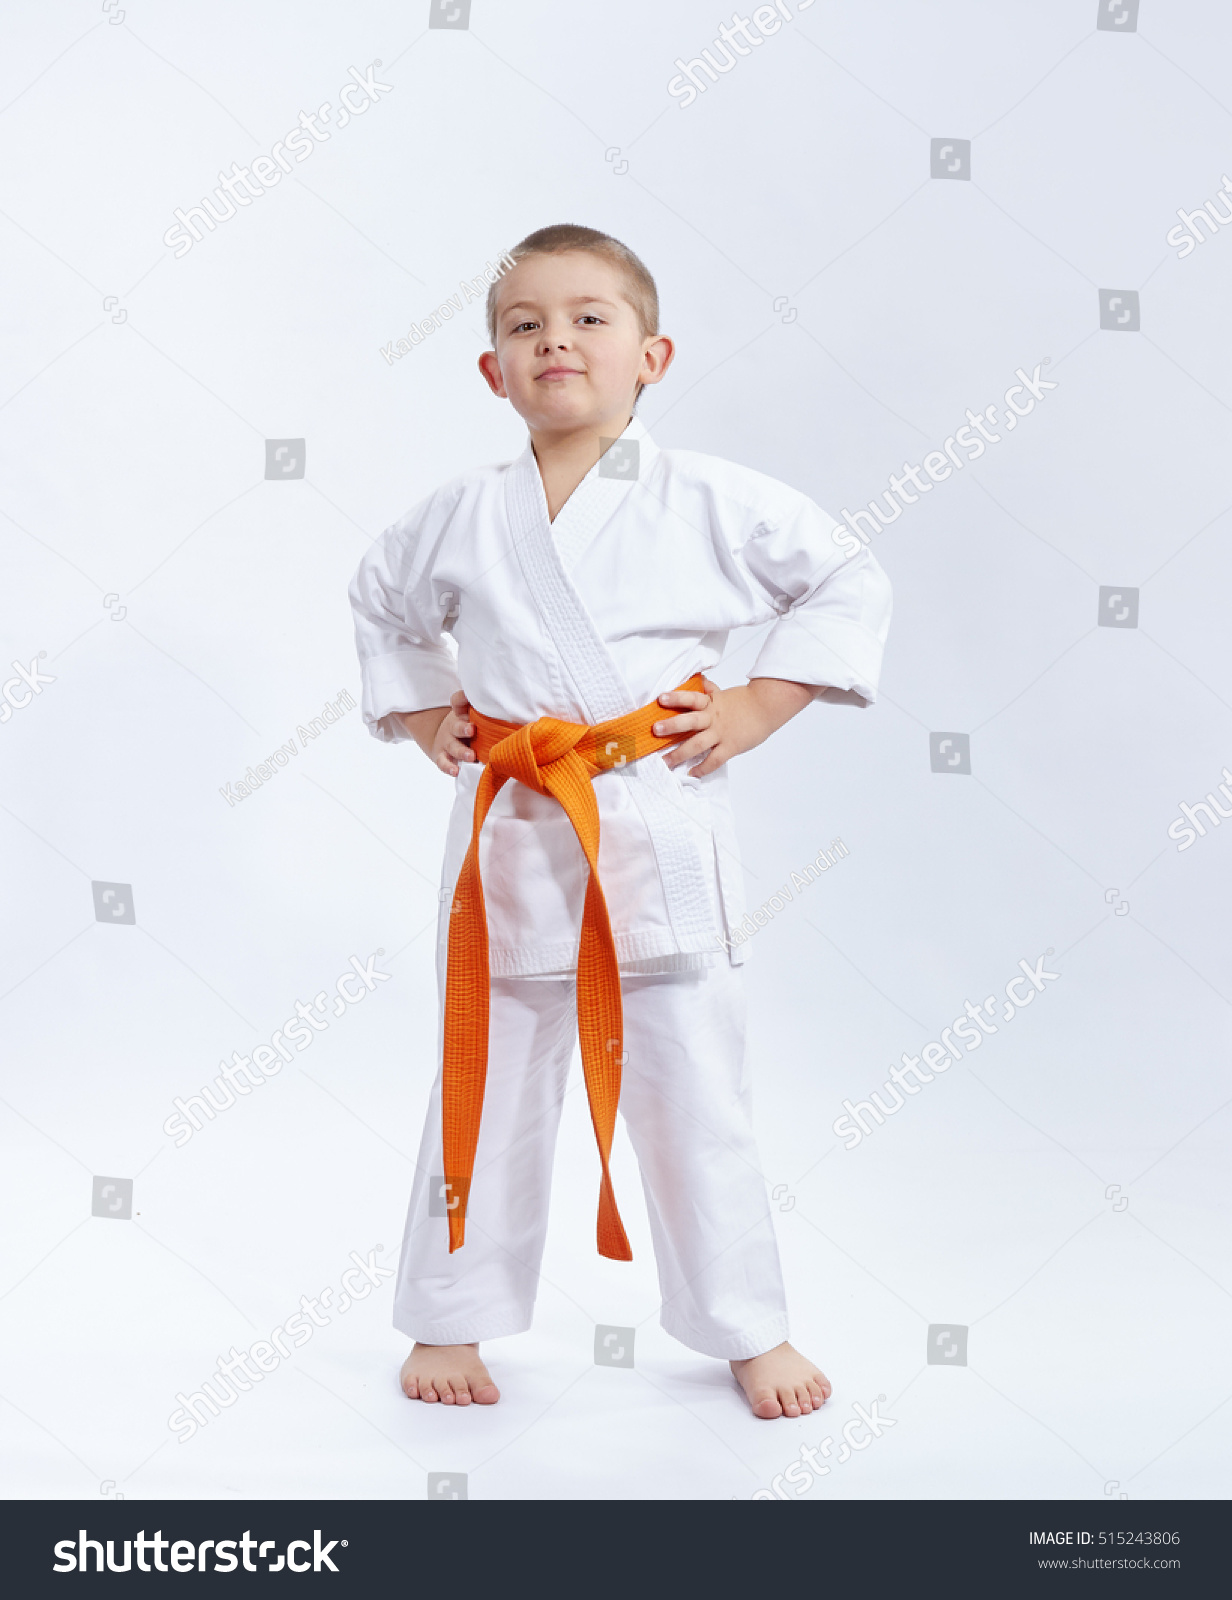 With orange belt athlete on a white background #515243806